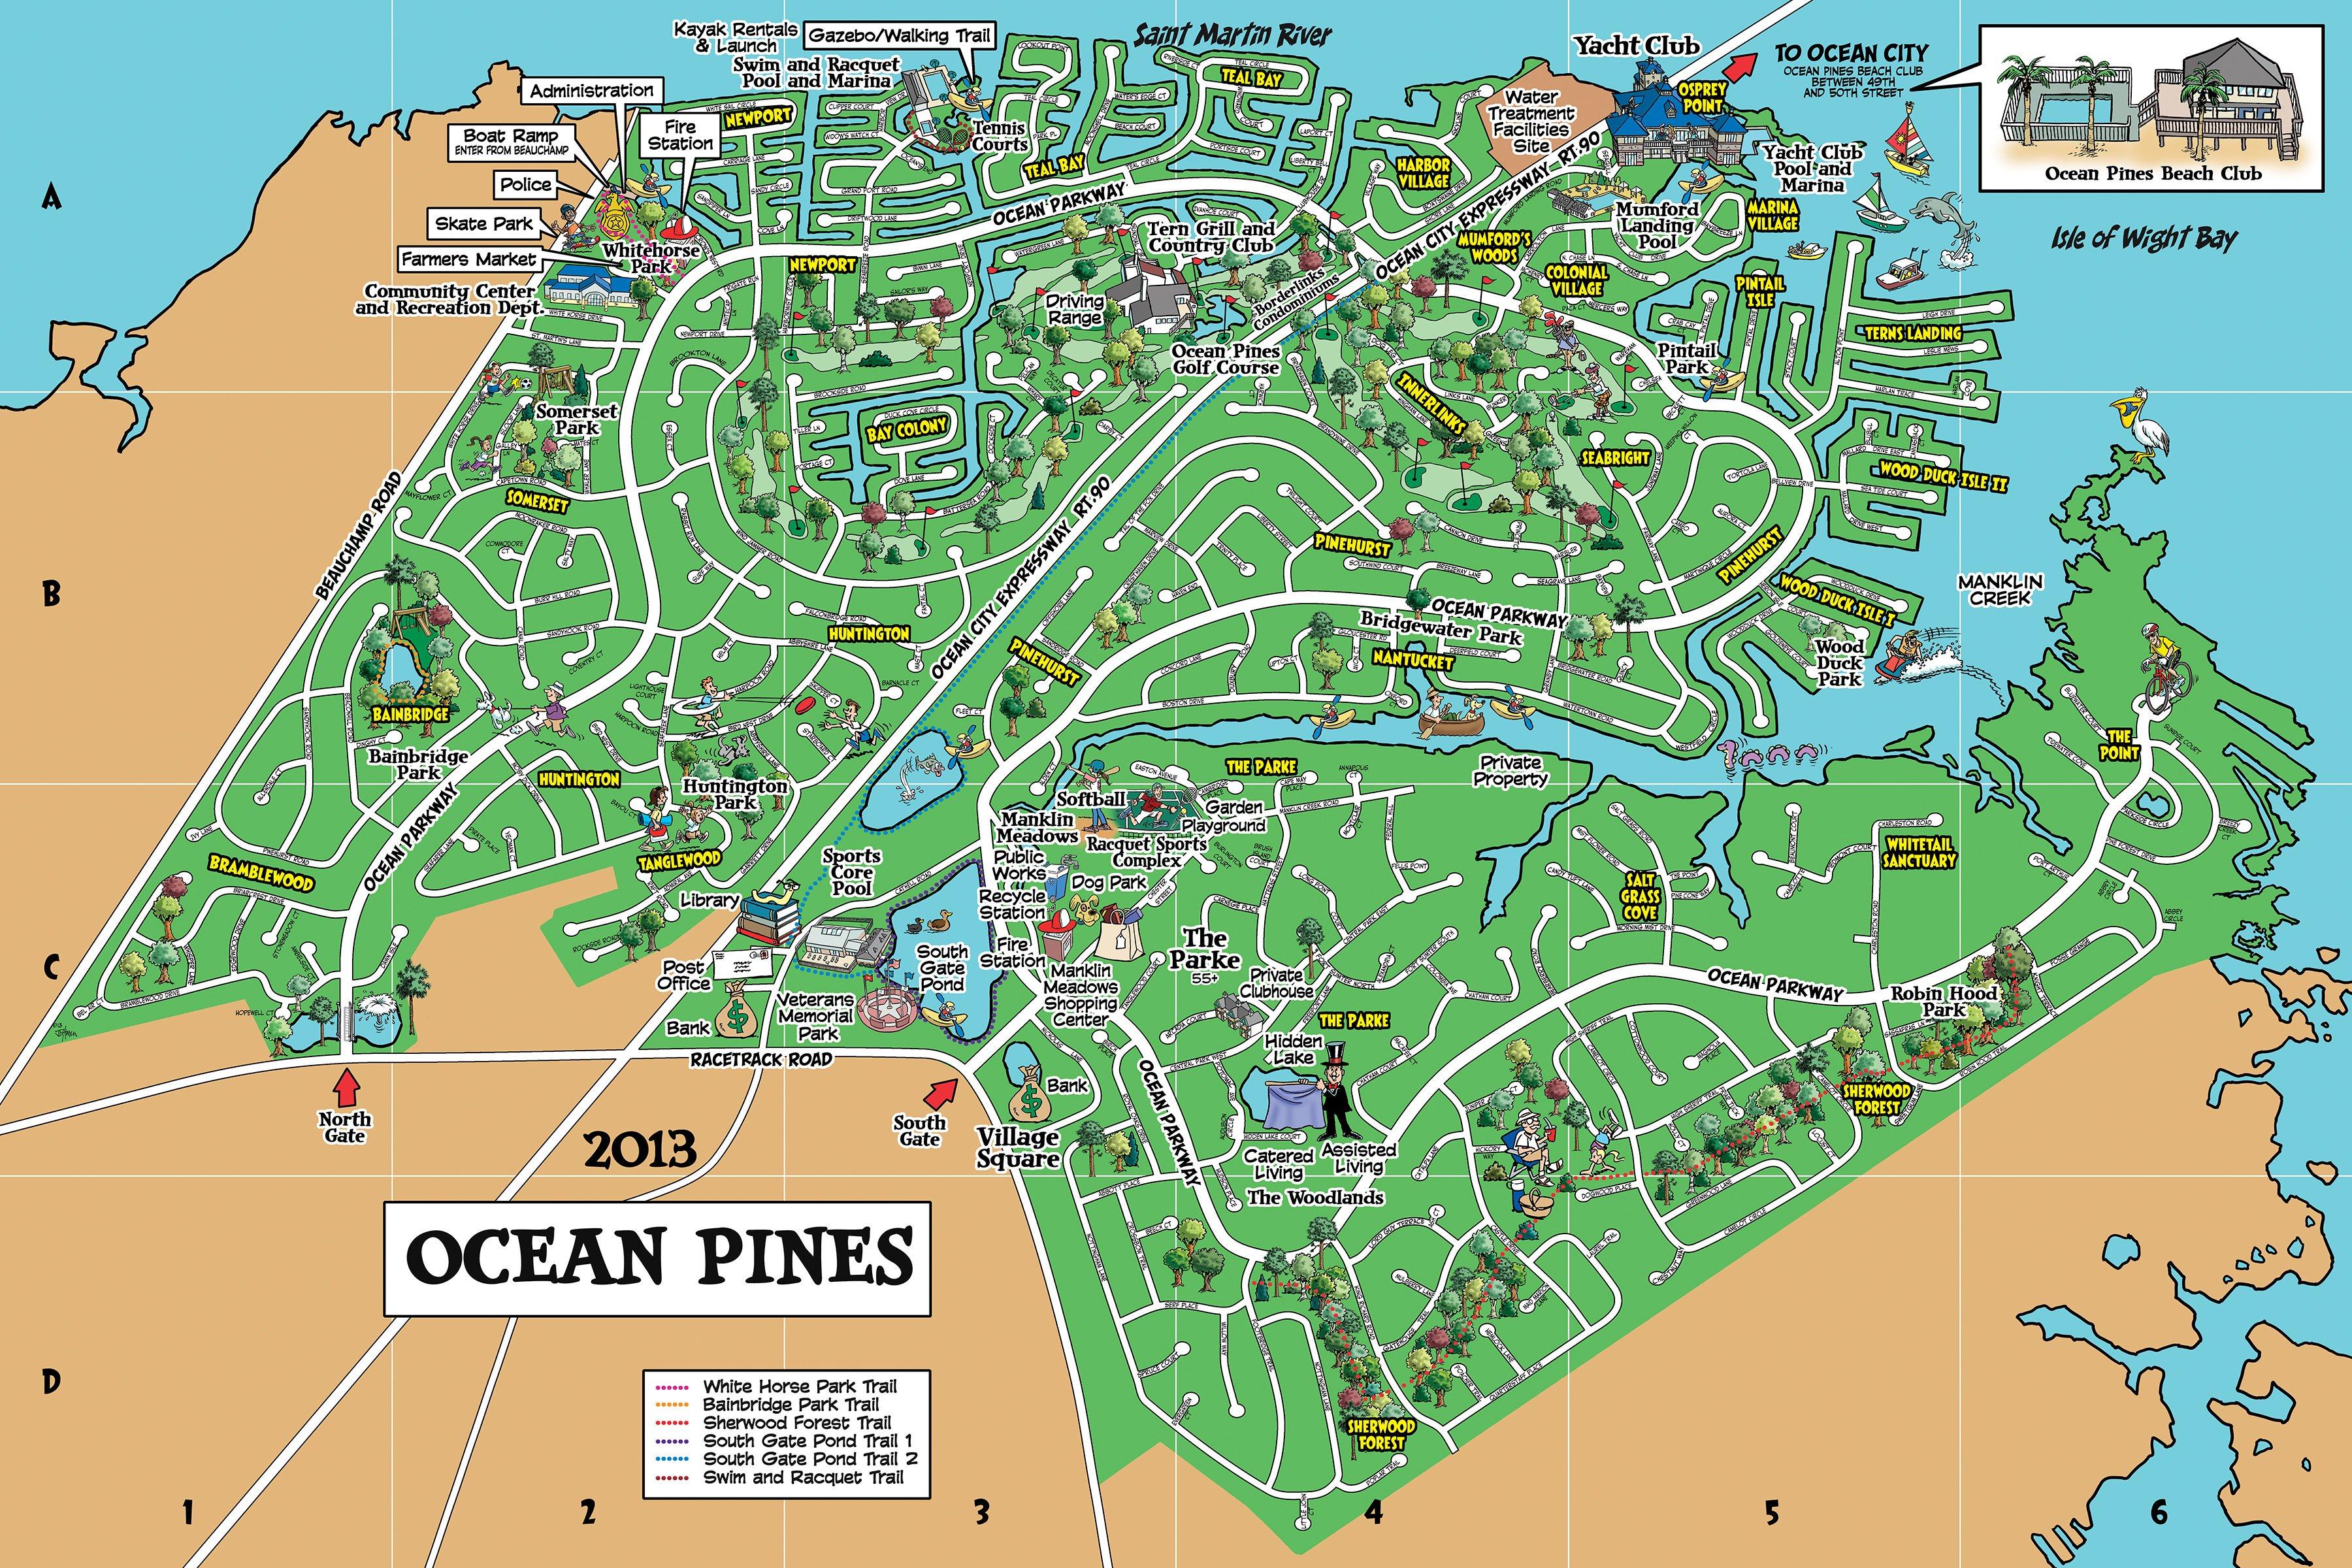 ocean pines yacht club pool schedule